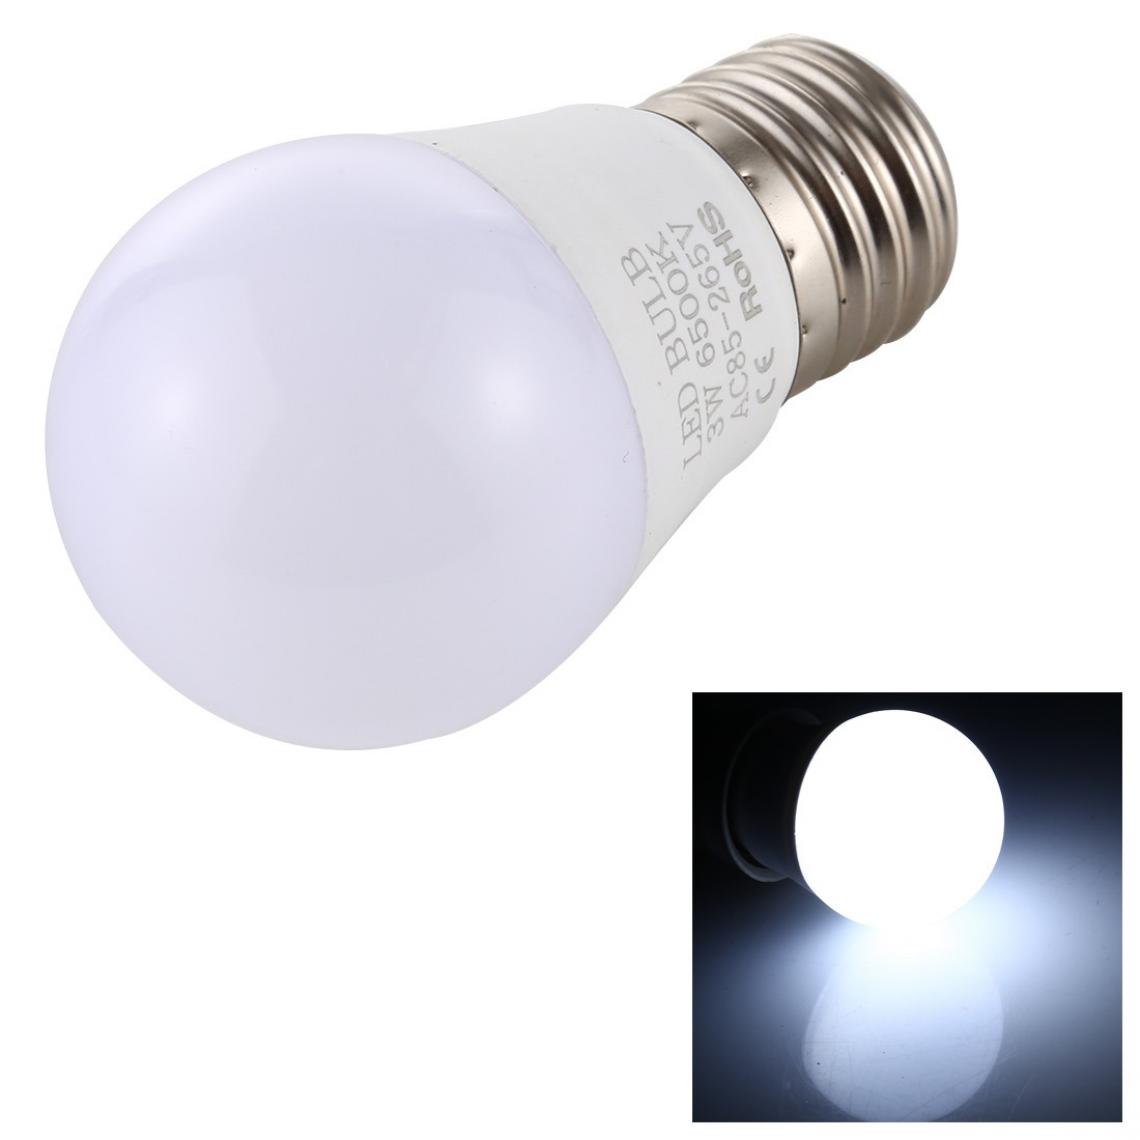 Wewoo - 3W 270LM LED ampoule à économie d'énergie lumière blanche 6000-6500K AC 85-265V - Ampoules LED